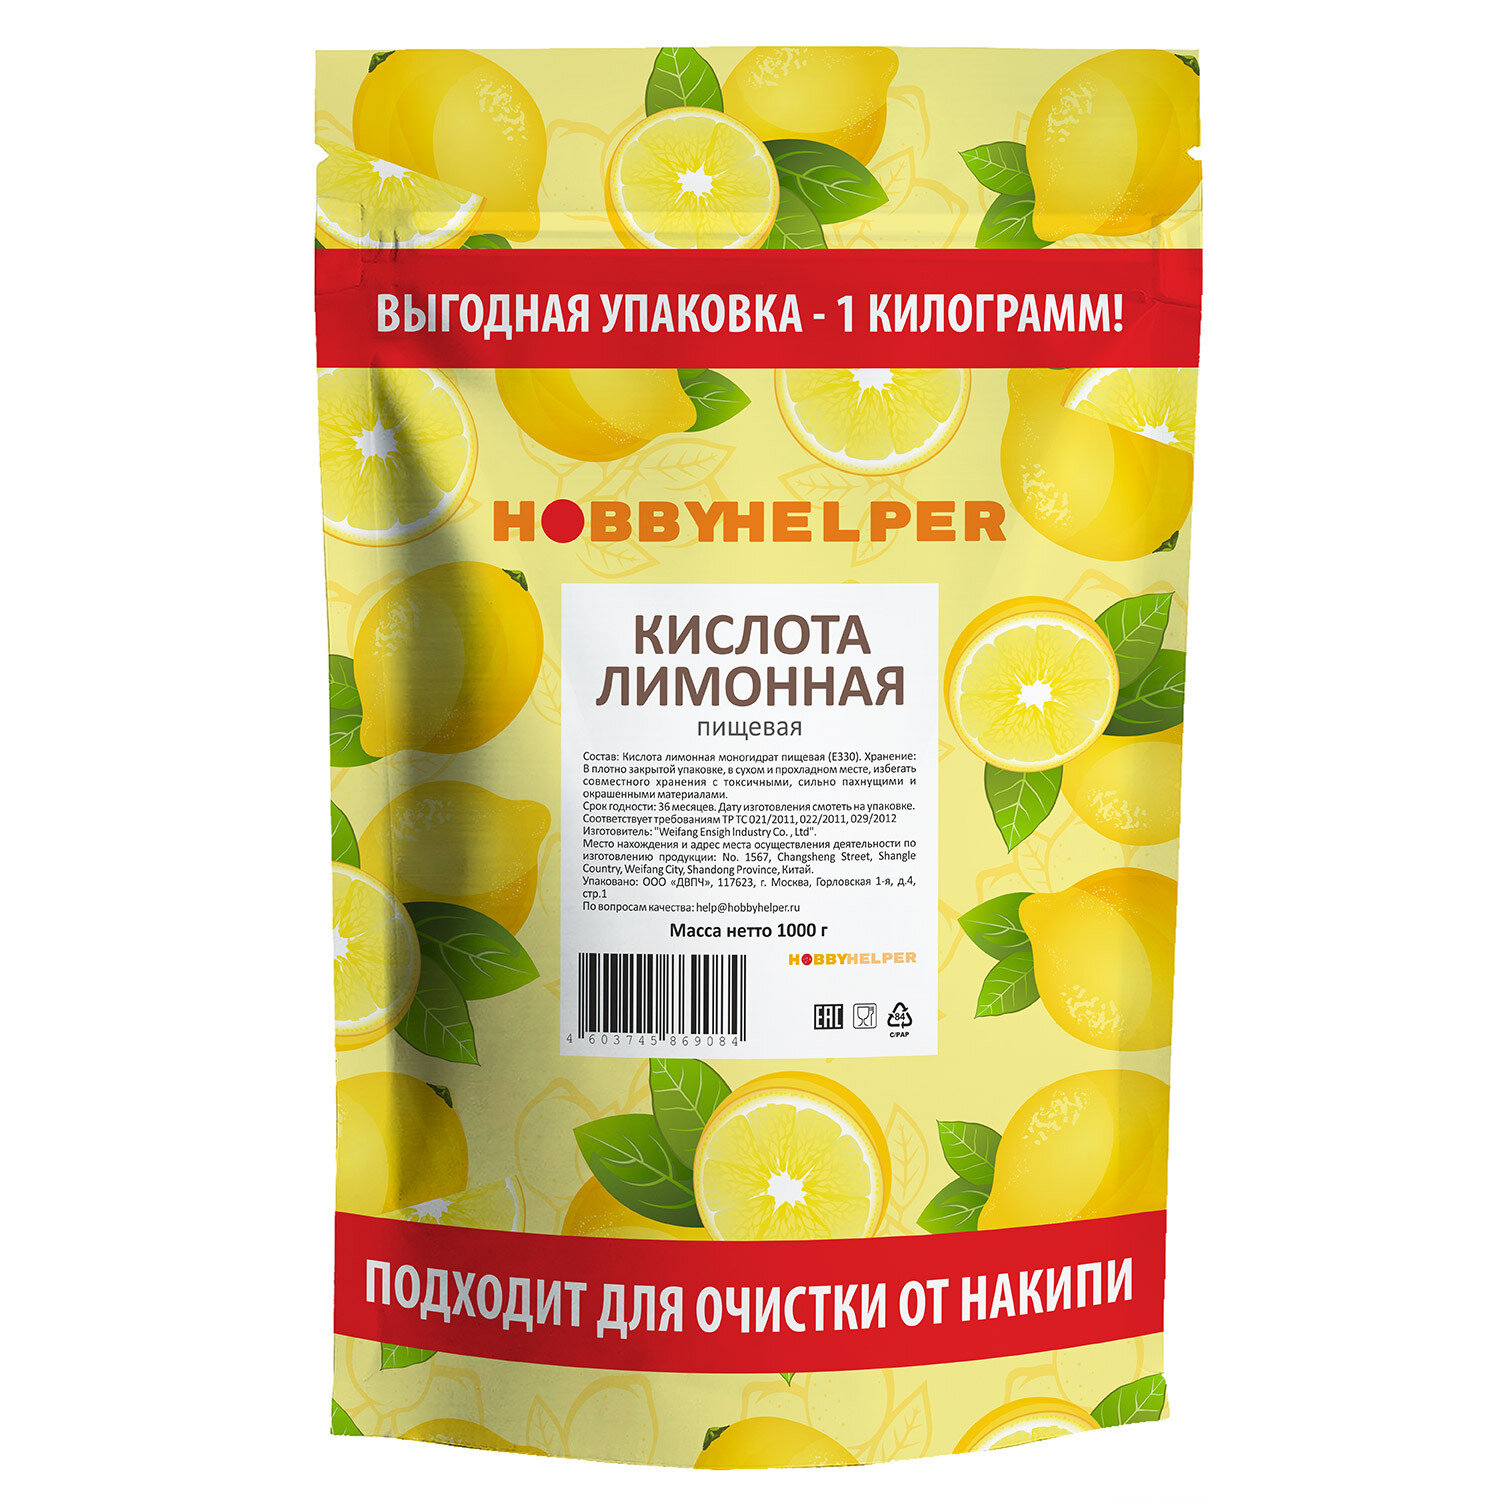 Лимонная кислота пищевая HOBBYHELPER 1 кг